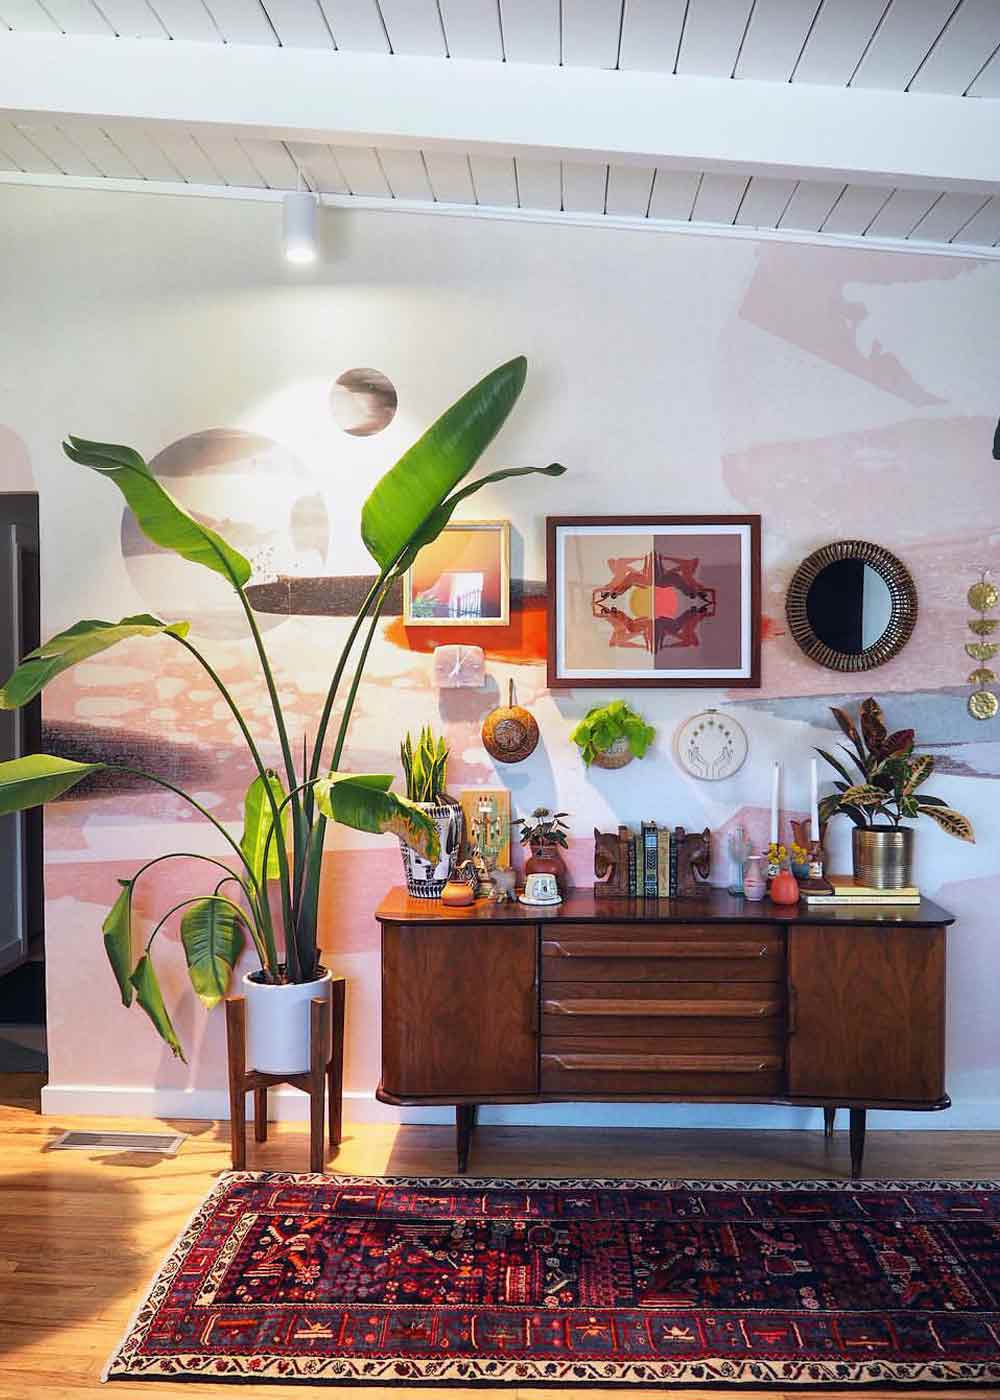 Eine XXL-Strelitzie in einem kleinen Holzständer neben einem hölzernen Sideboard mit weiteren Pflanzen und Deko-Artikeln, davor ein Teppich und an der Wand dahinter diverse viereckige und runde Bilder und Spiegel